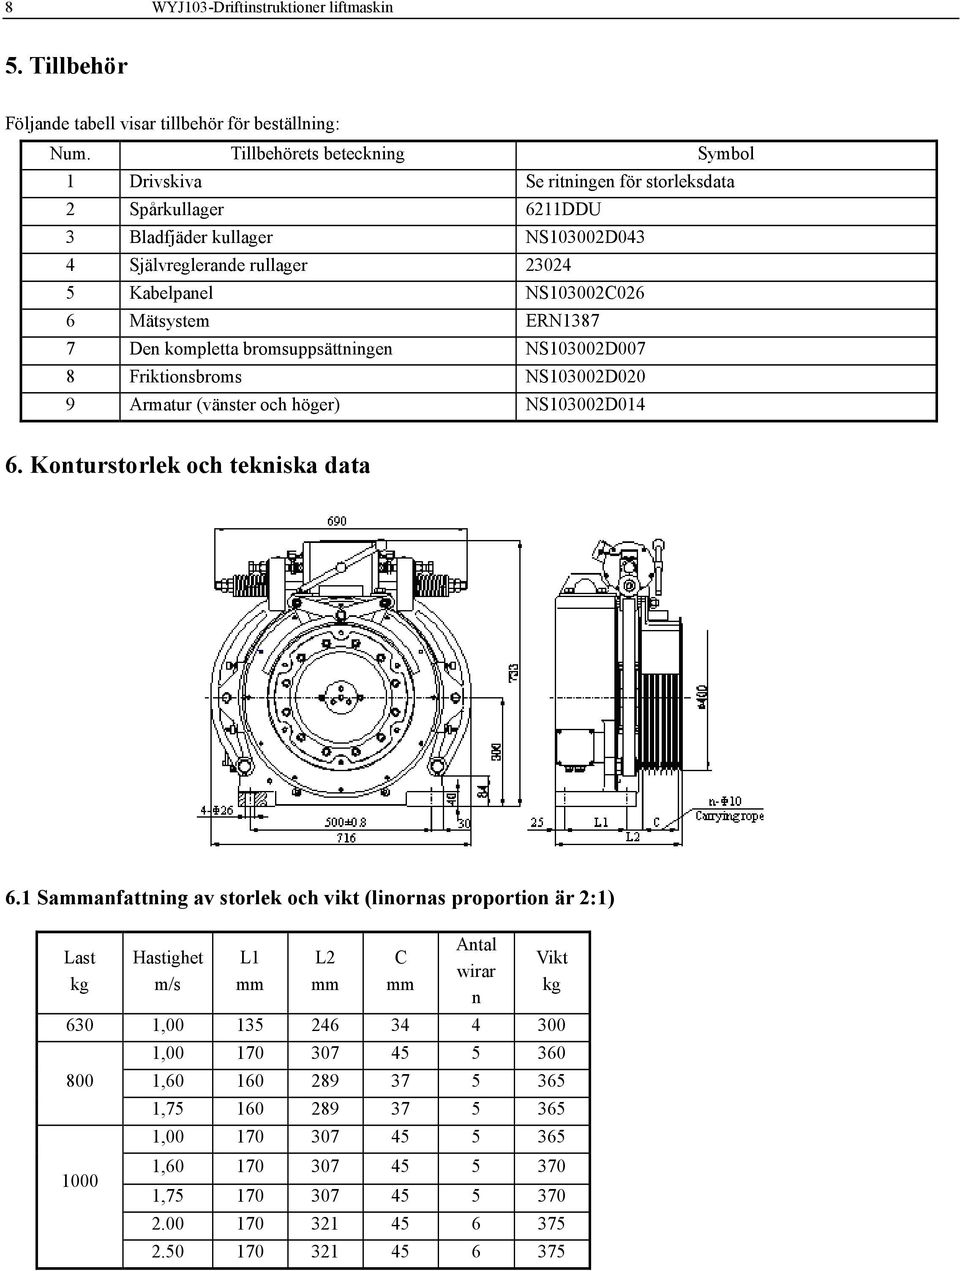 Mätsystem ERN1387 7 Den kompletta bromsuppsättningen NS103002D007 8 Friktionsbroms NS103002D020 9 Armatur (vänster och höger) NS103002D014 6. Konturstorlek och tekniska data 6.